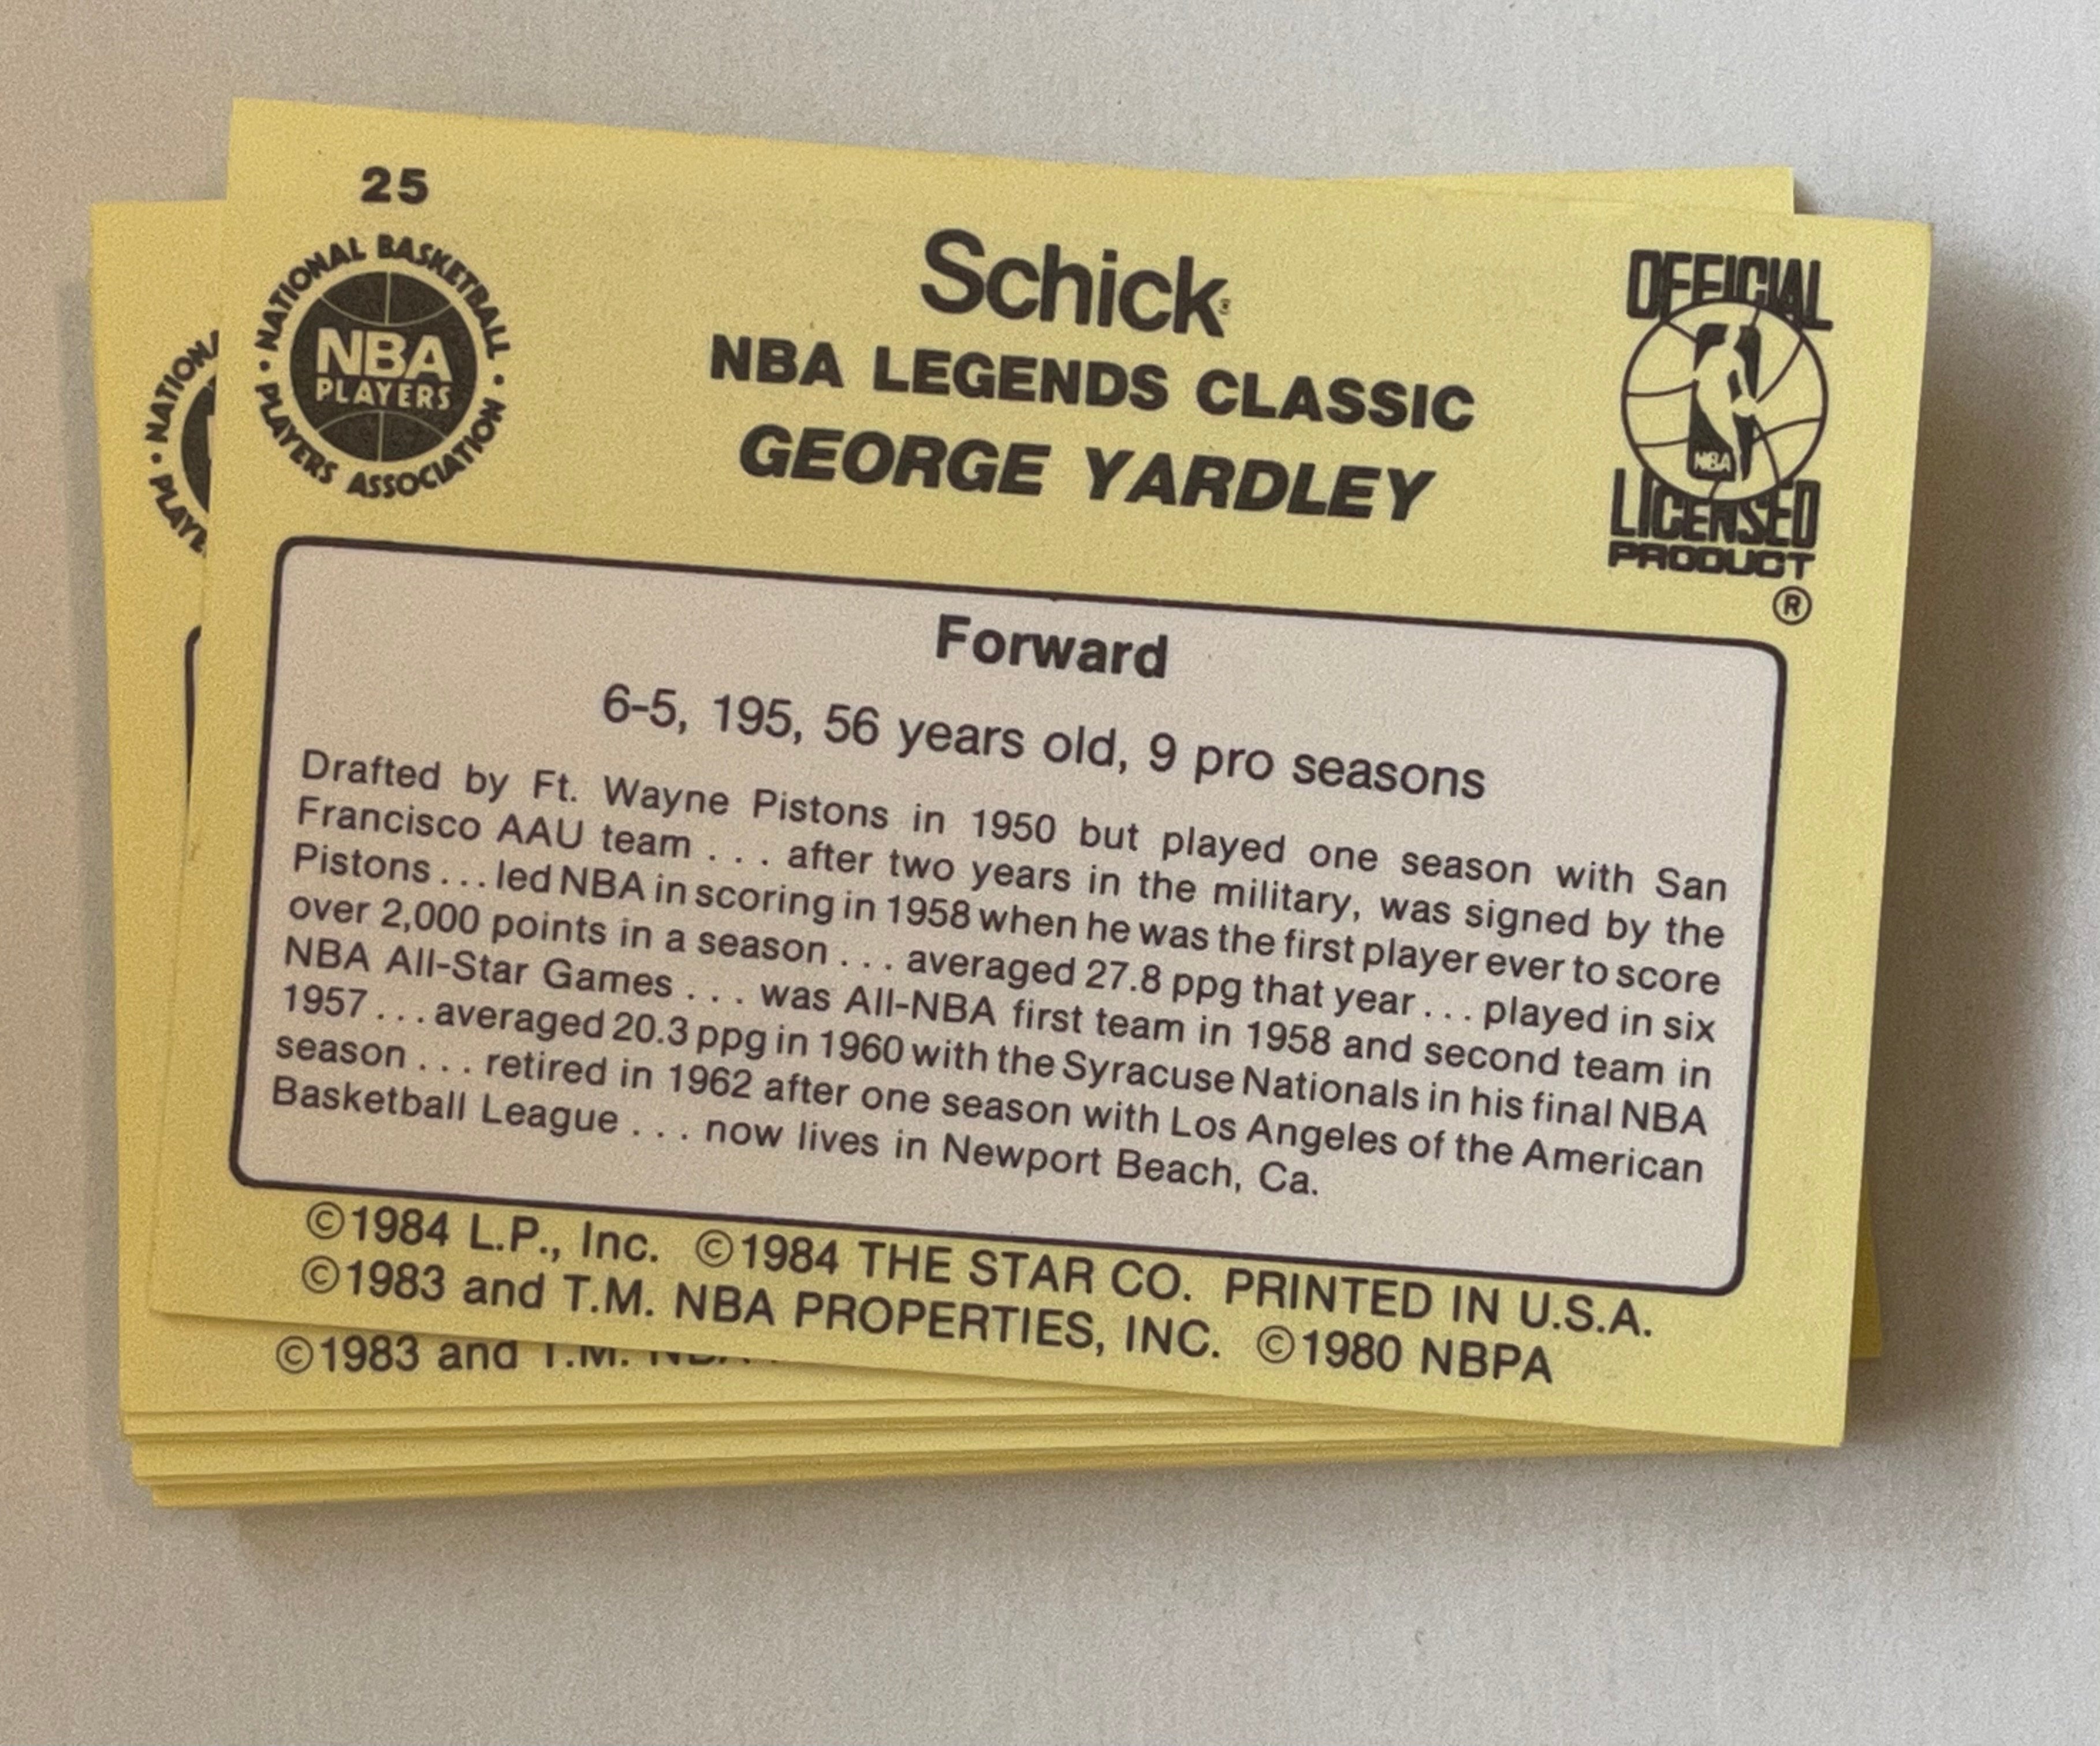 1985 Schick Star basketball high grade basketball legends cards set